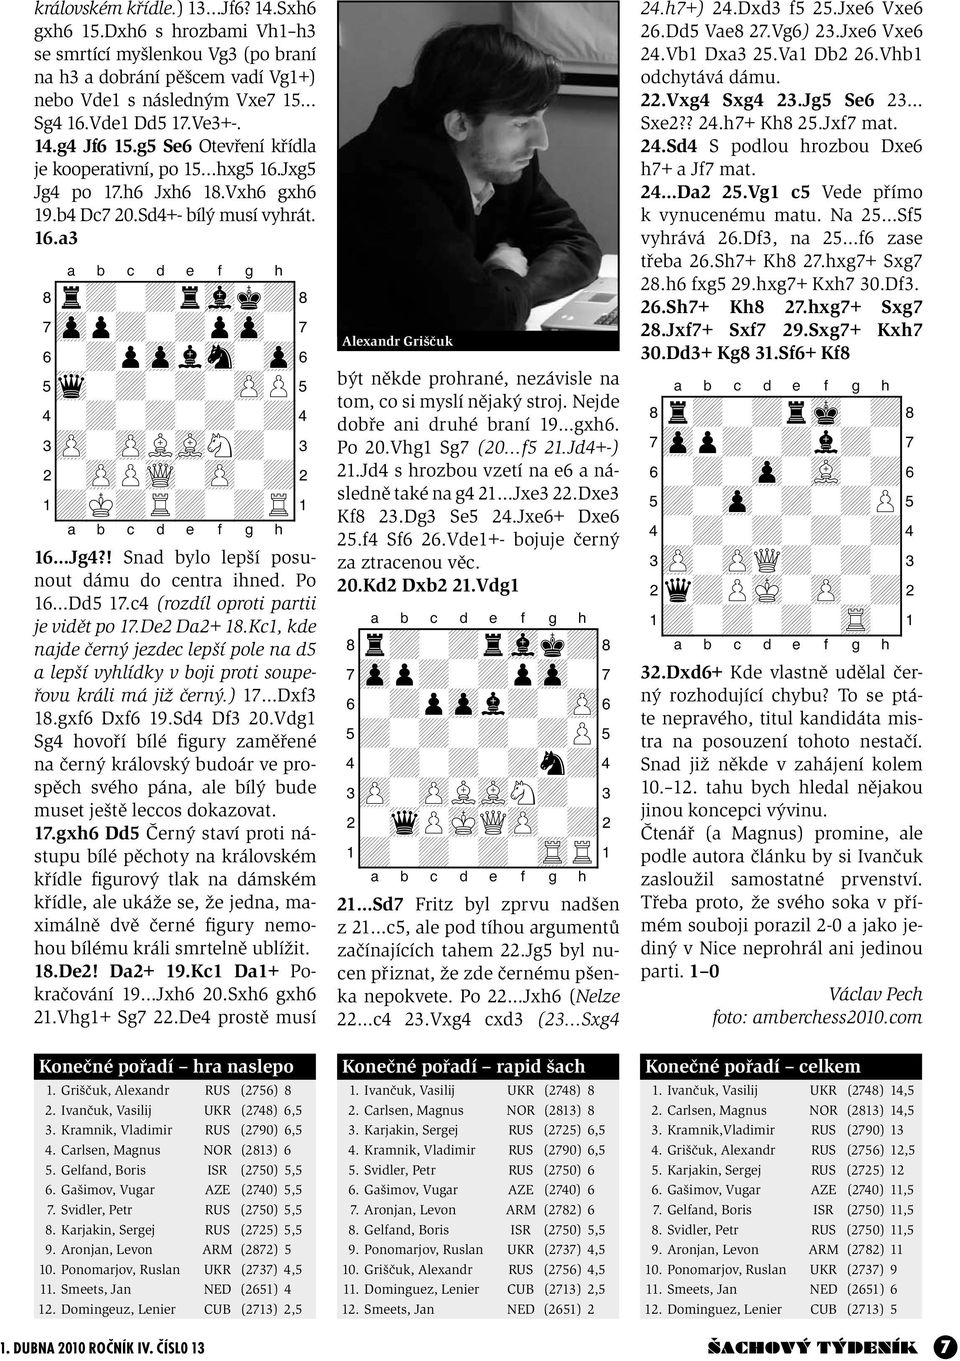 16 Jg4?! Snad bylo lepší posunout dámu do centra ihned. Po 16 Dd5 17.c4 (rozdíl oproti partii je vidět po 17.De2 Da2+ 18.